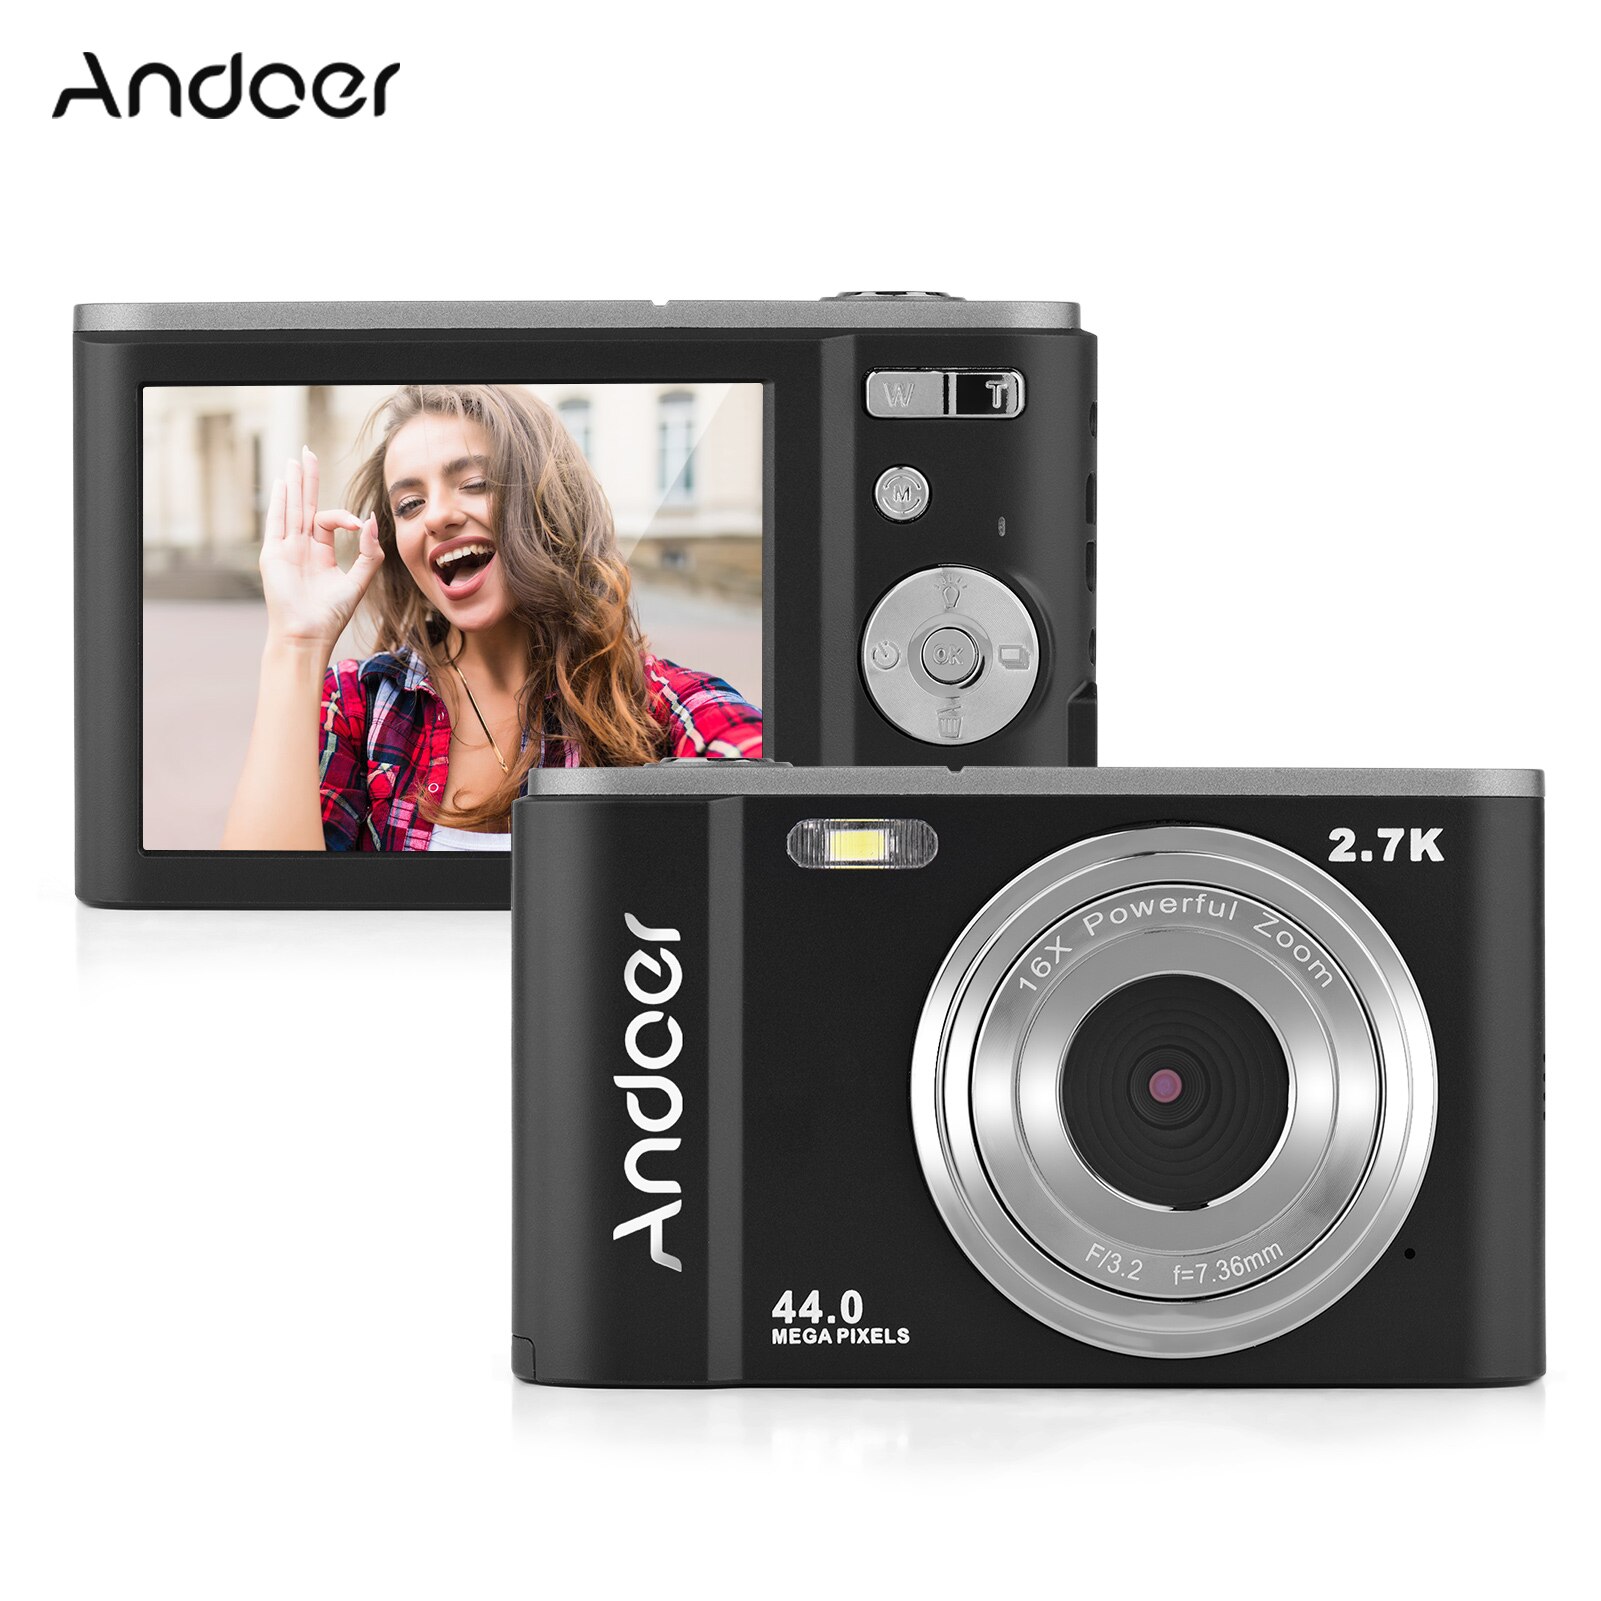 Foto Mini fotocamera digitale 44MP 2.7K 16X Zoom autoscatto 128GB memoria estesa rilevamento del viso batterie integrate anti-agitazione: D9337